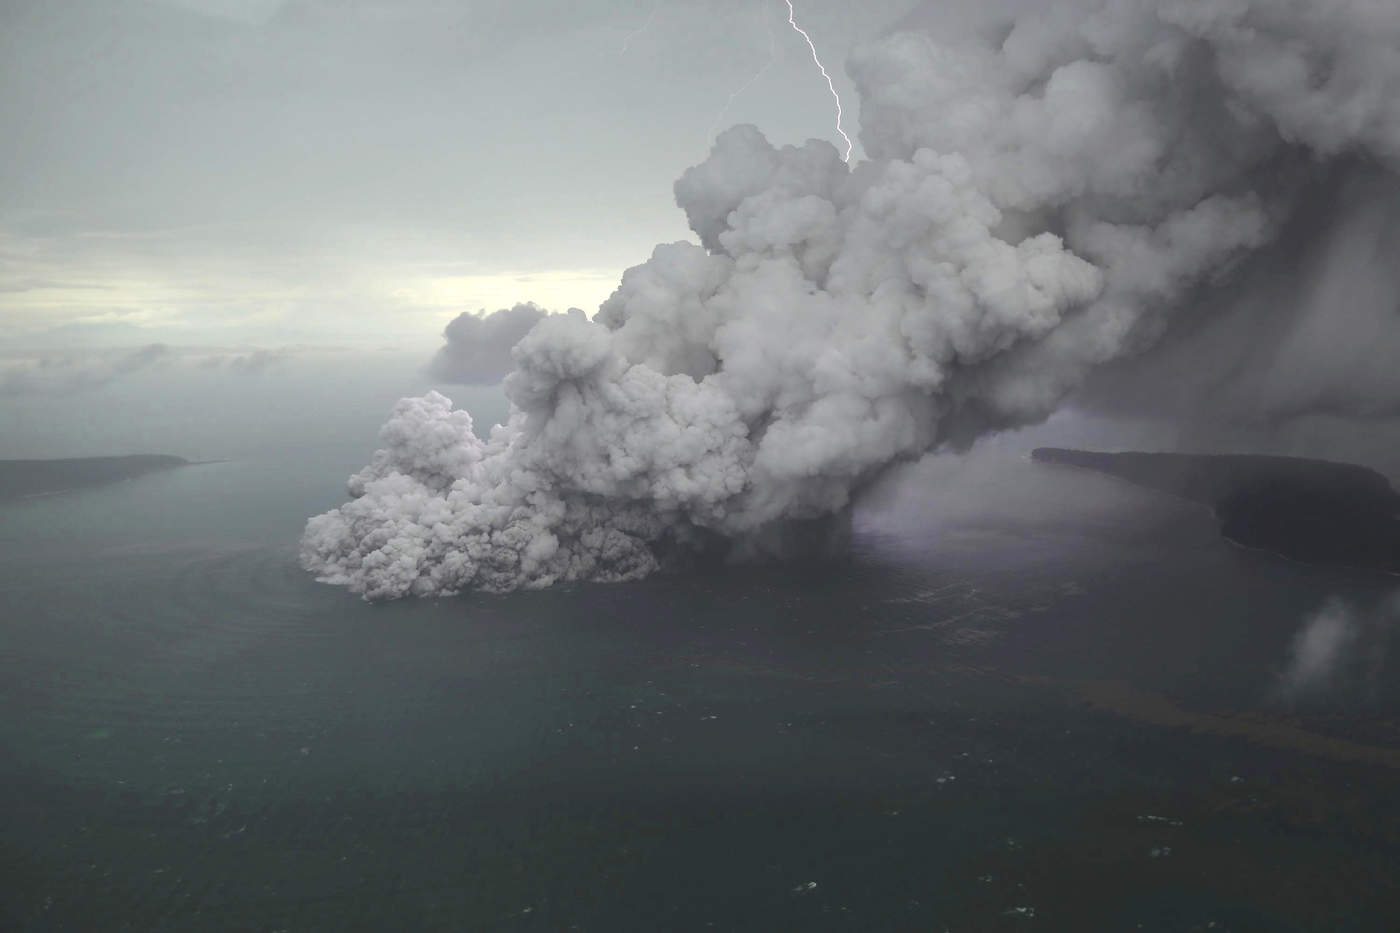 El portavoz de la Agencia Nacional de Gestión de Desastres (BNPB), Sutopo Purwo Nugroho, indicó que la alerta ha pasado del nivel 2 al 3 en una escala de 4 y que el radio de exclusión alrededor del volcán ha sido extendido de 2 a 5 kilómetros. (ARCHIVO)